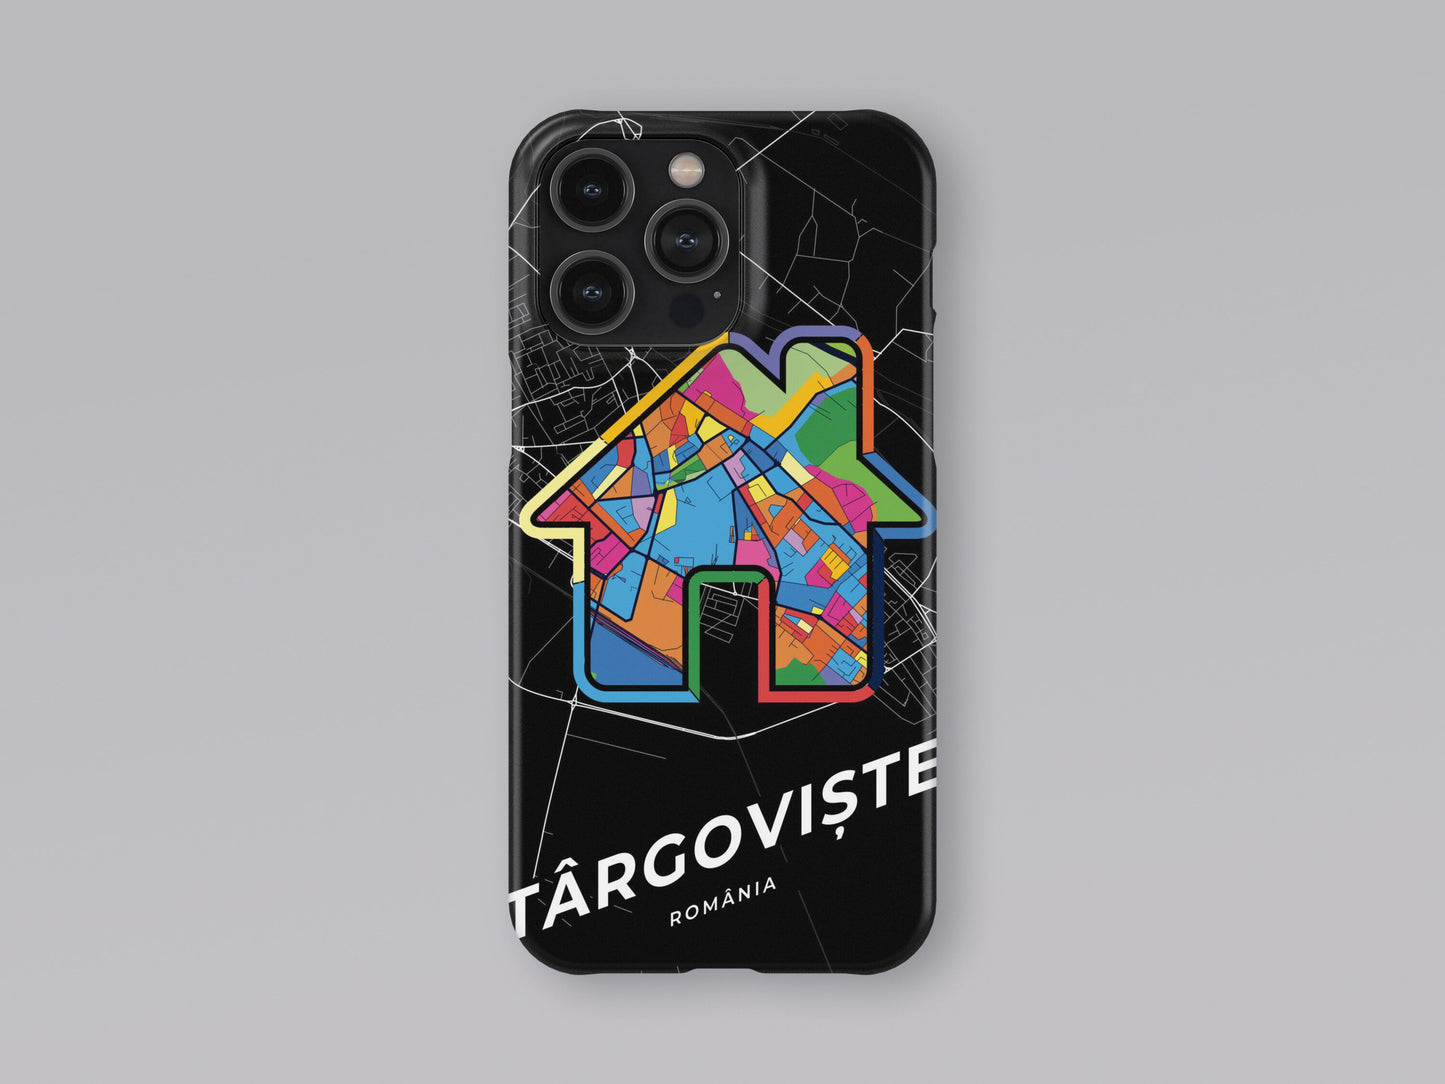 Târgoviște Romania slim phone case with colorful icon 3